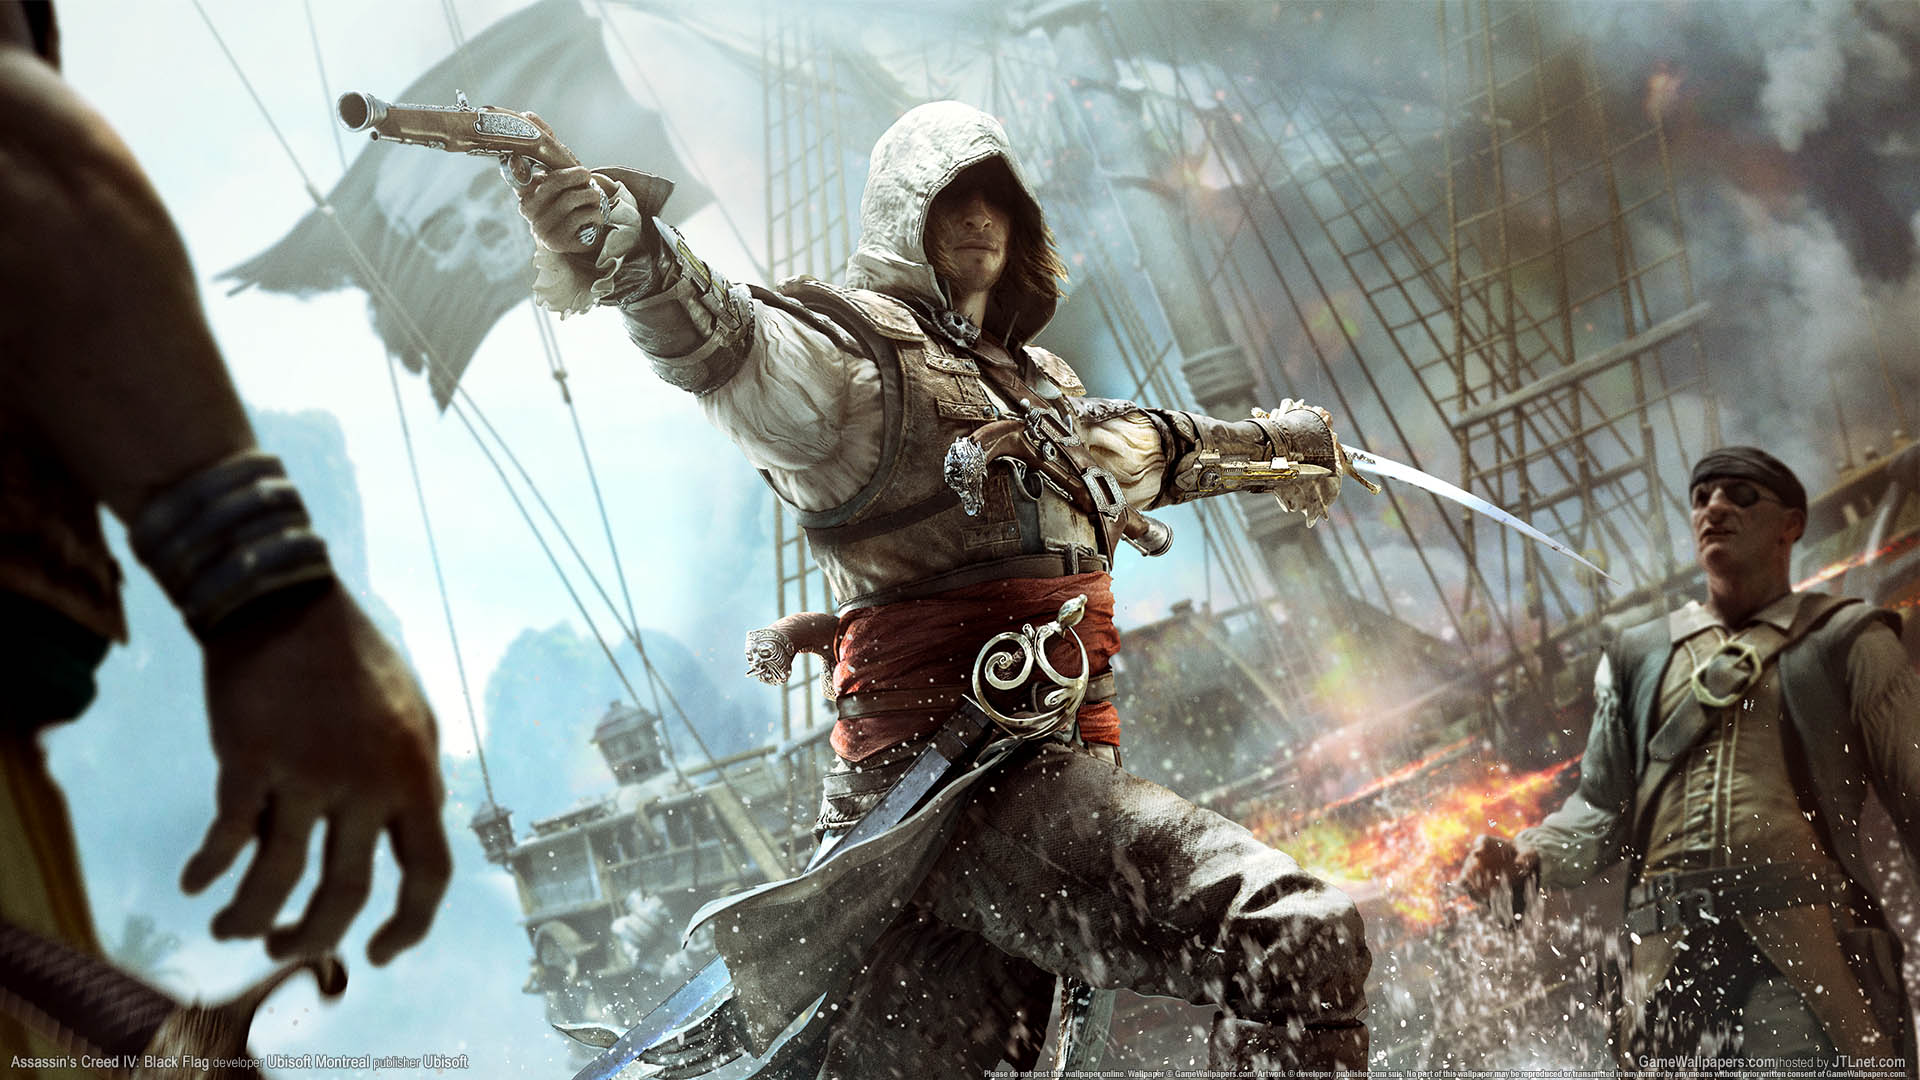 Assassin's Creed 4: Black Flag fond d'cran 02 1920x1080